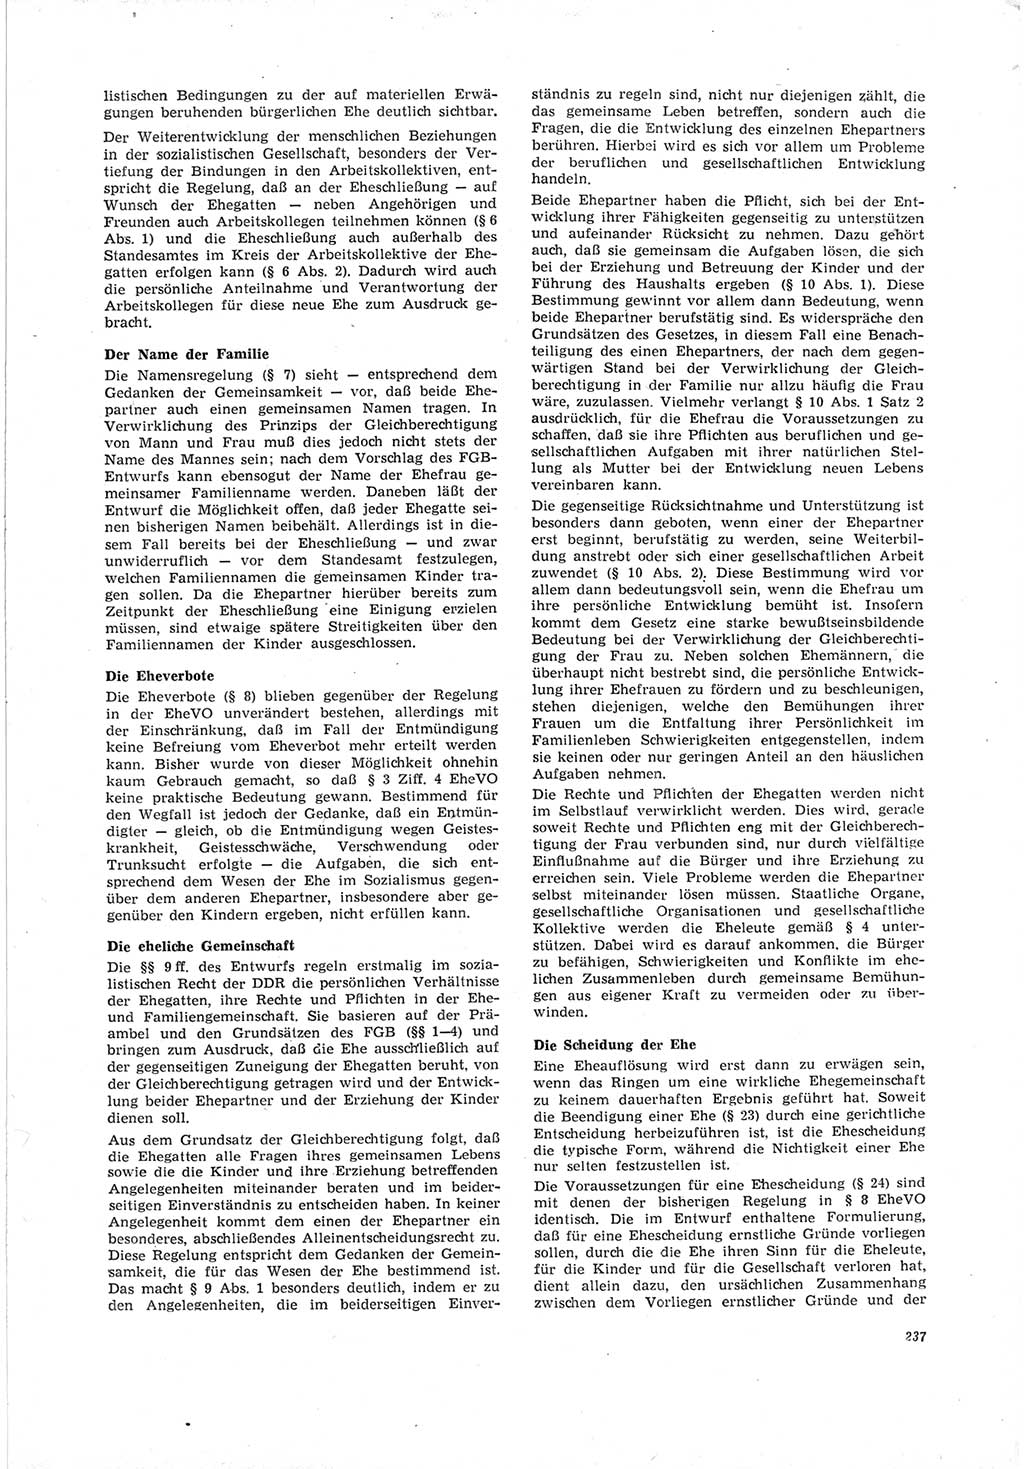 Neue Justiz (NJ), Zeitschrift für Recht und Rechtswissenschaft [Deutsche Demokratische Republik (DDR)], 19. Jahrgang 1965, Seite 237 (NJ DDR 1965, S. 237)